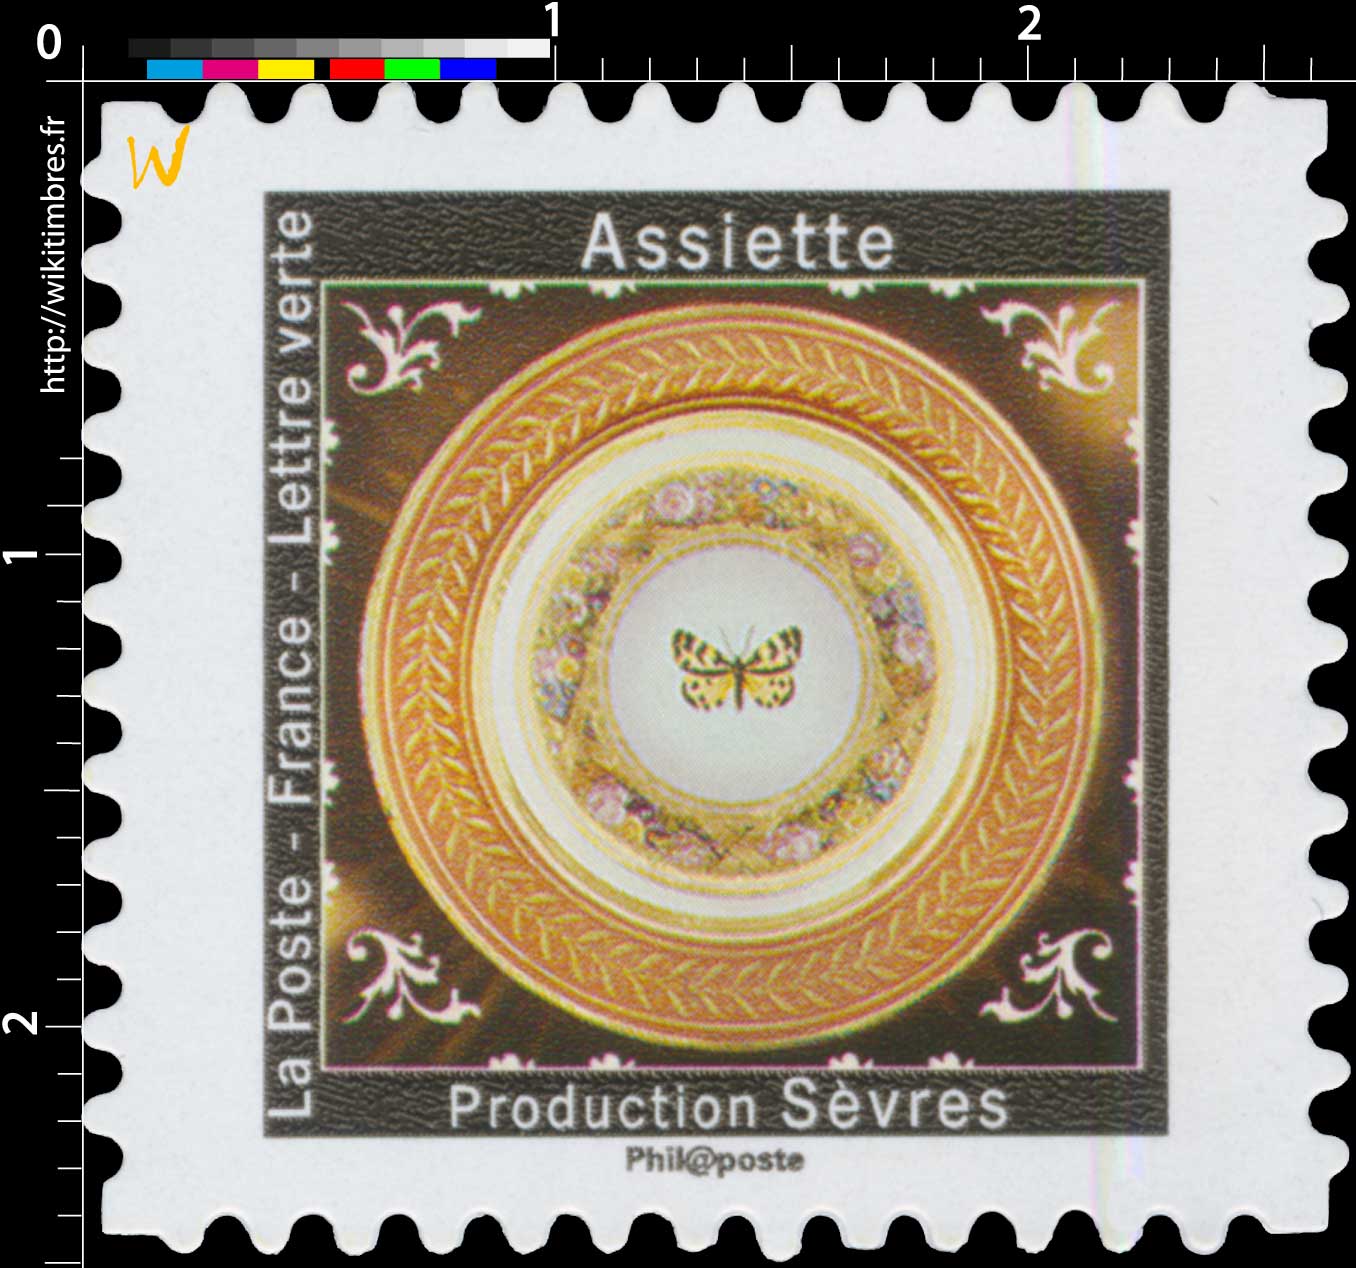 2019 Assiette - Production Sèvres